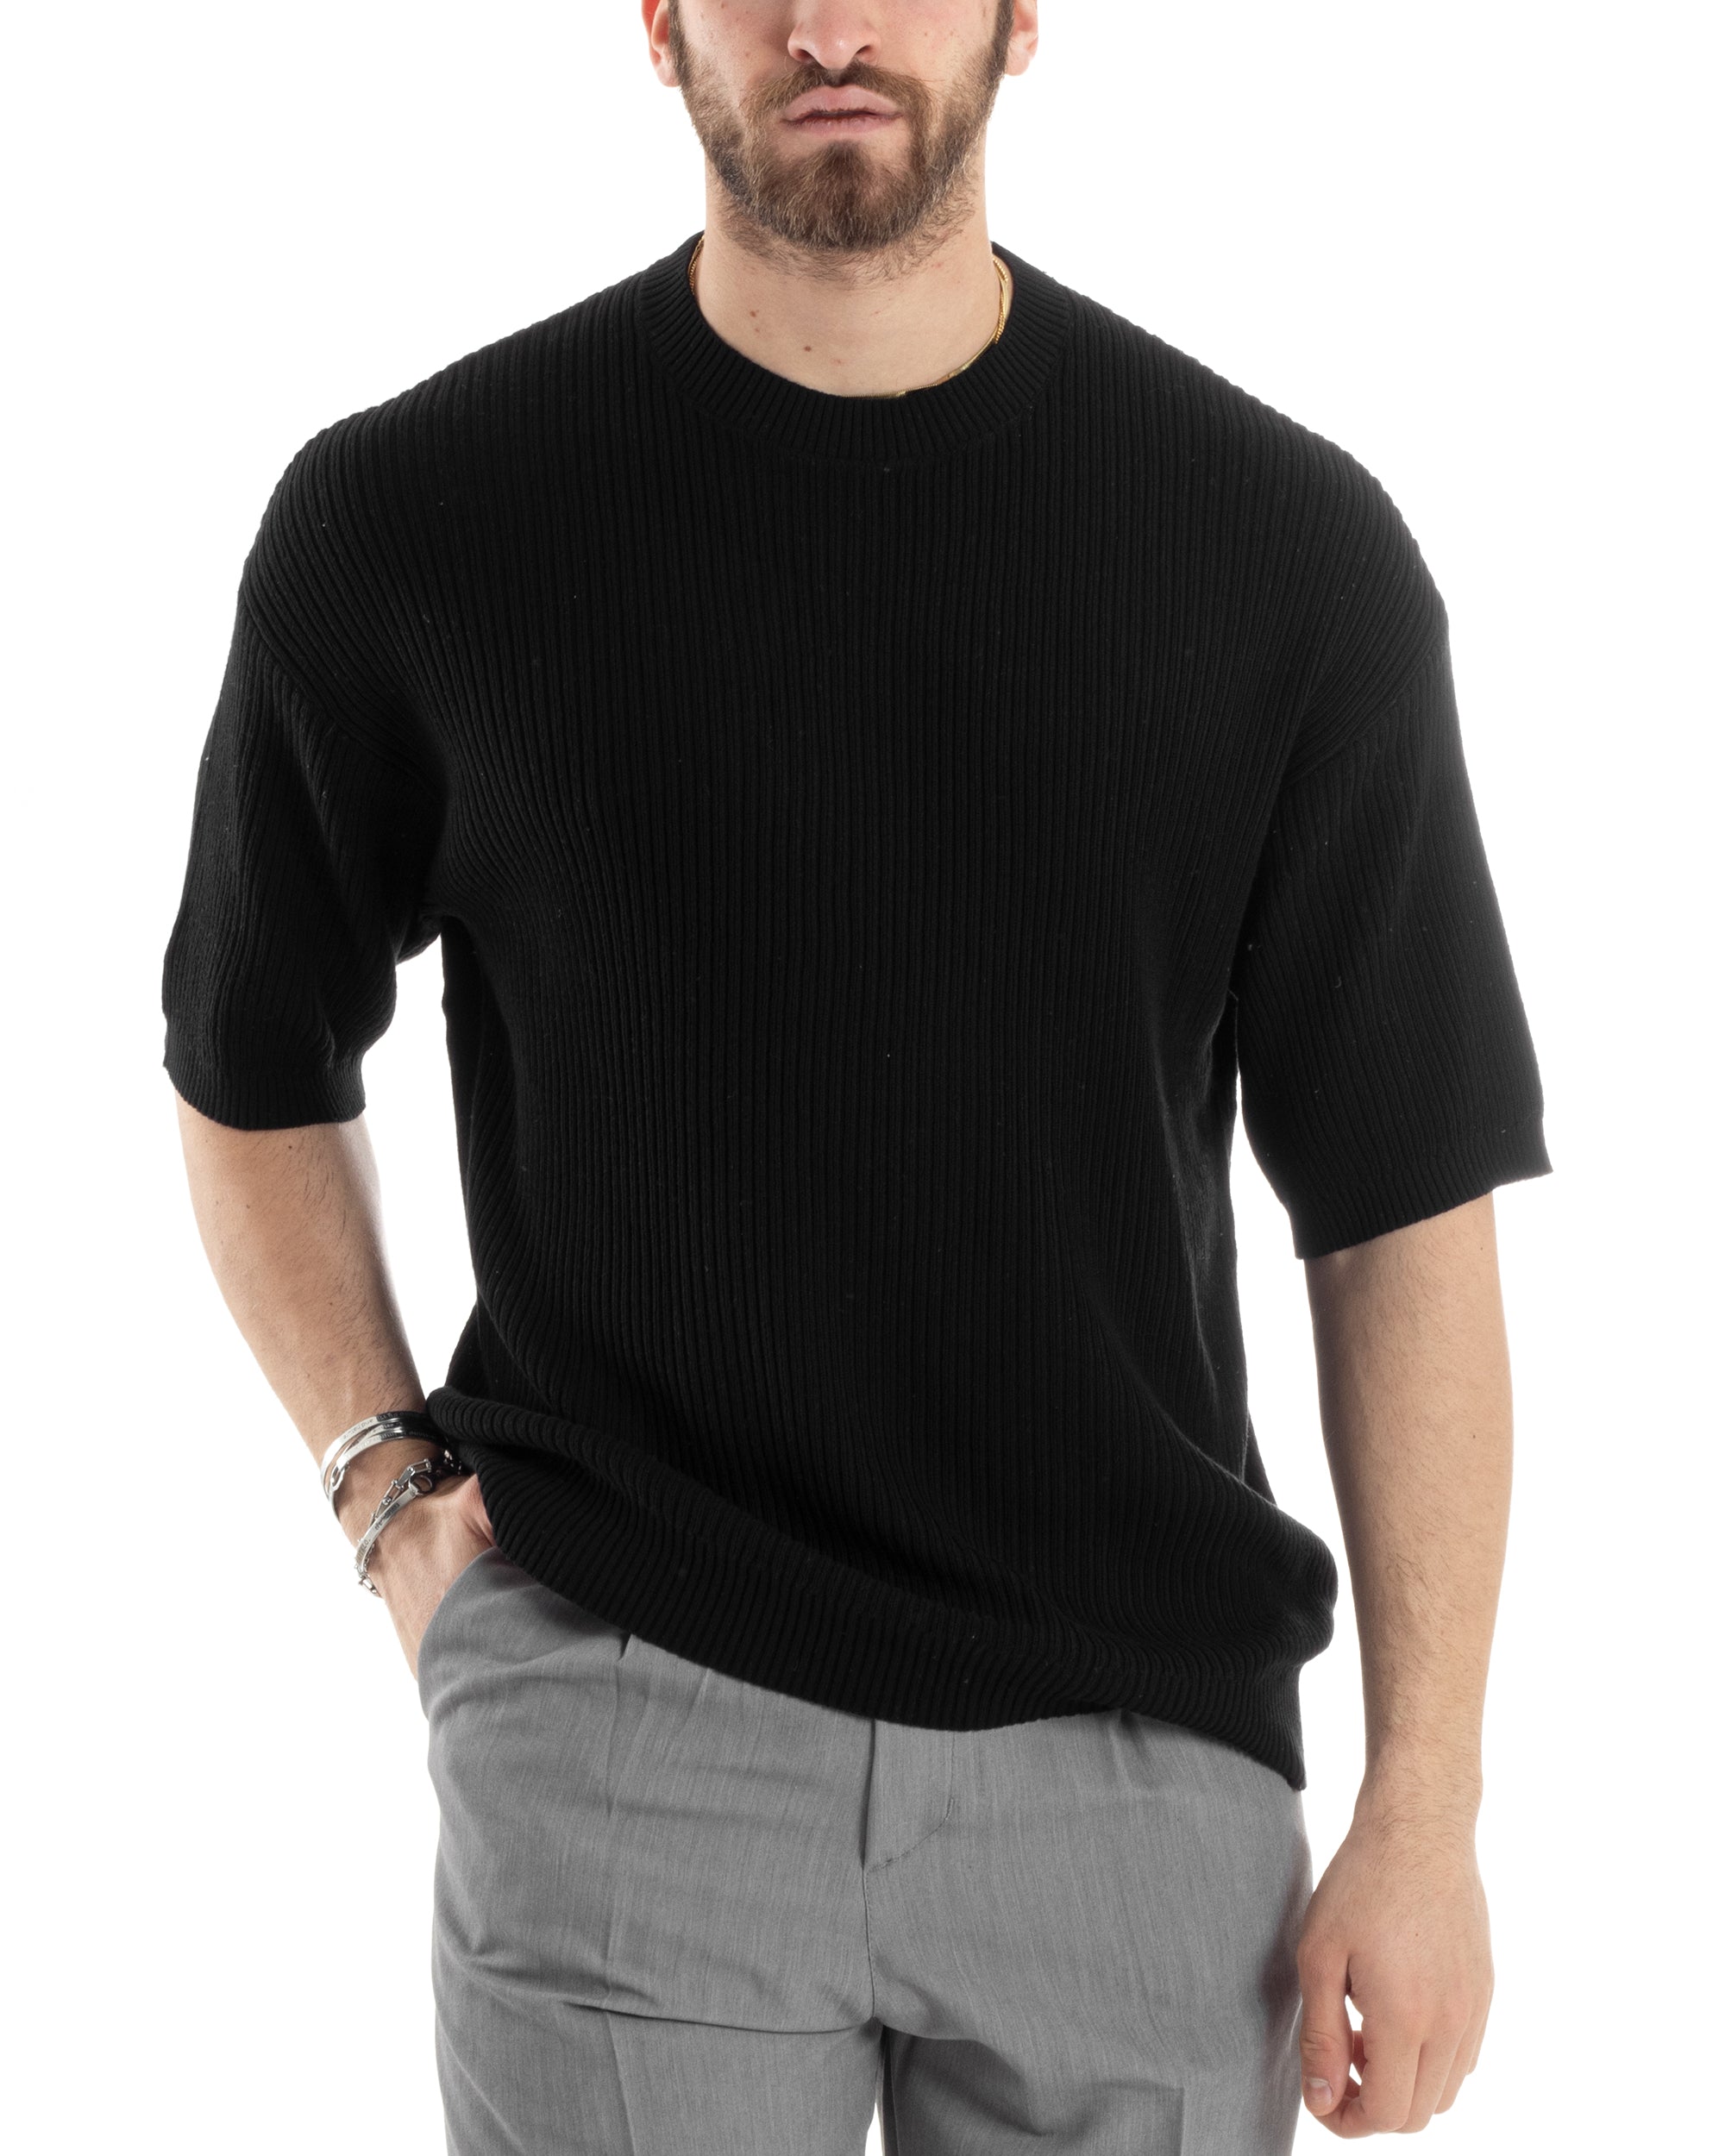 T-shirt Uomo Maglia In Filo A Costine Maniche Corte Basic Oversize Nero Casual GIOSAL-TS2999A